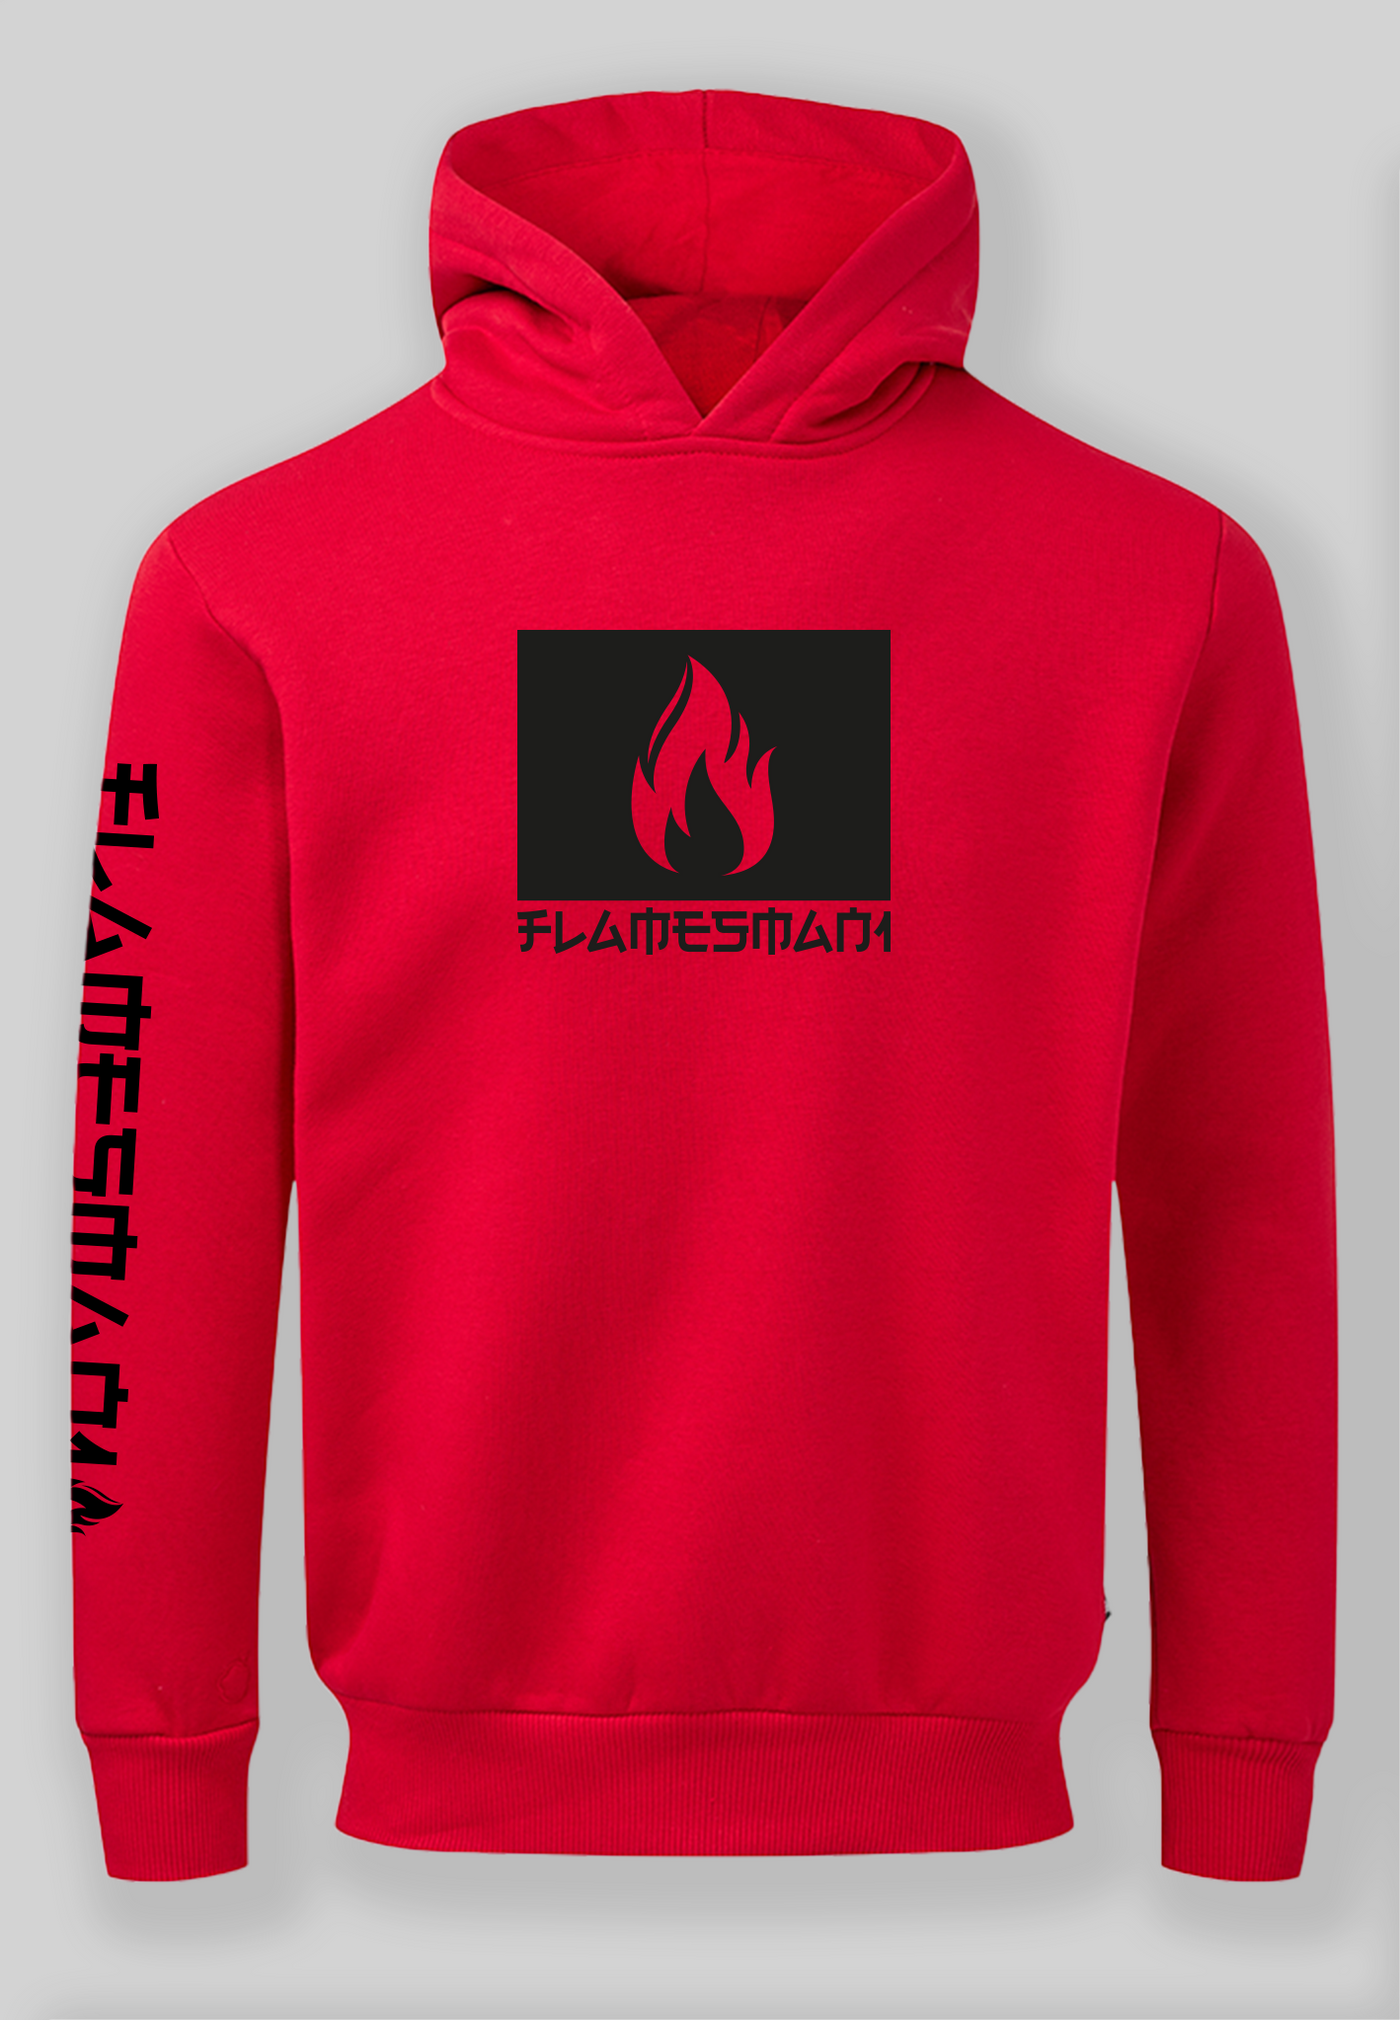 Flamesman1 - Fire 2.0 / Red Hoodie